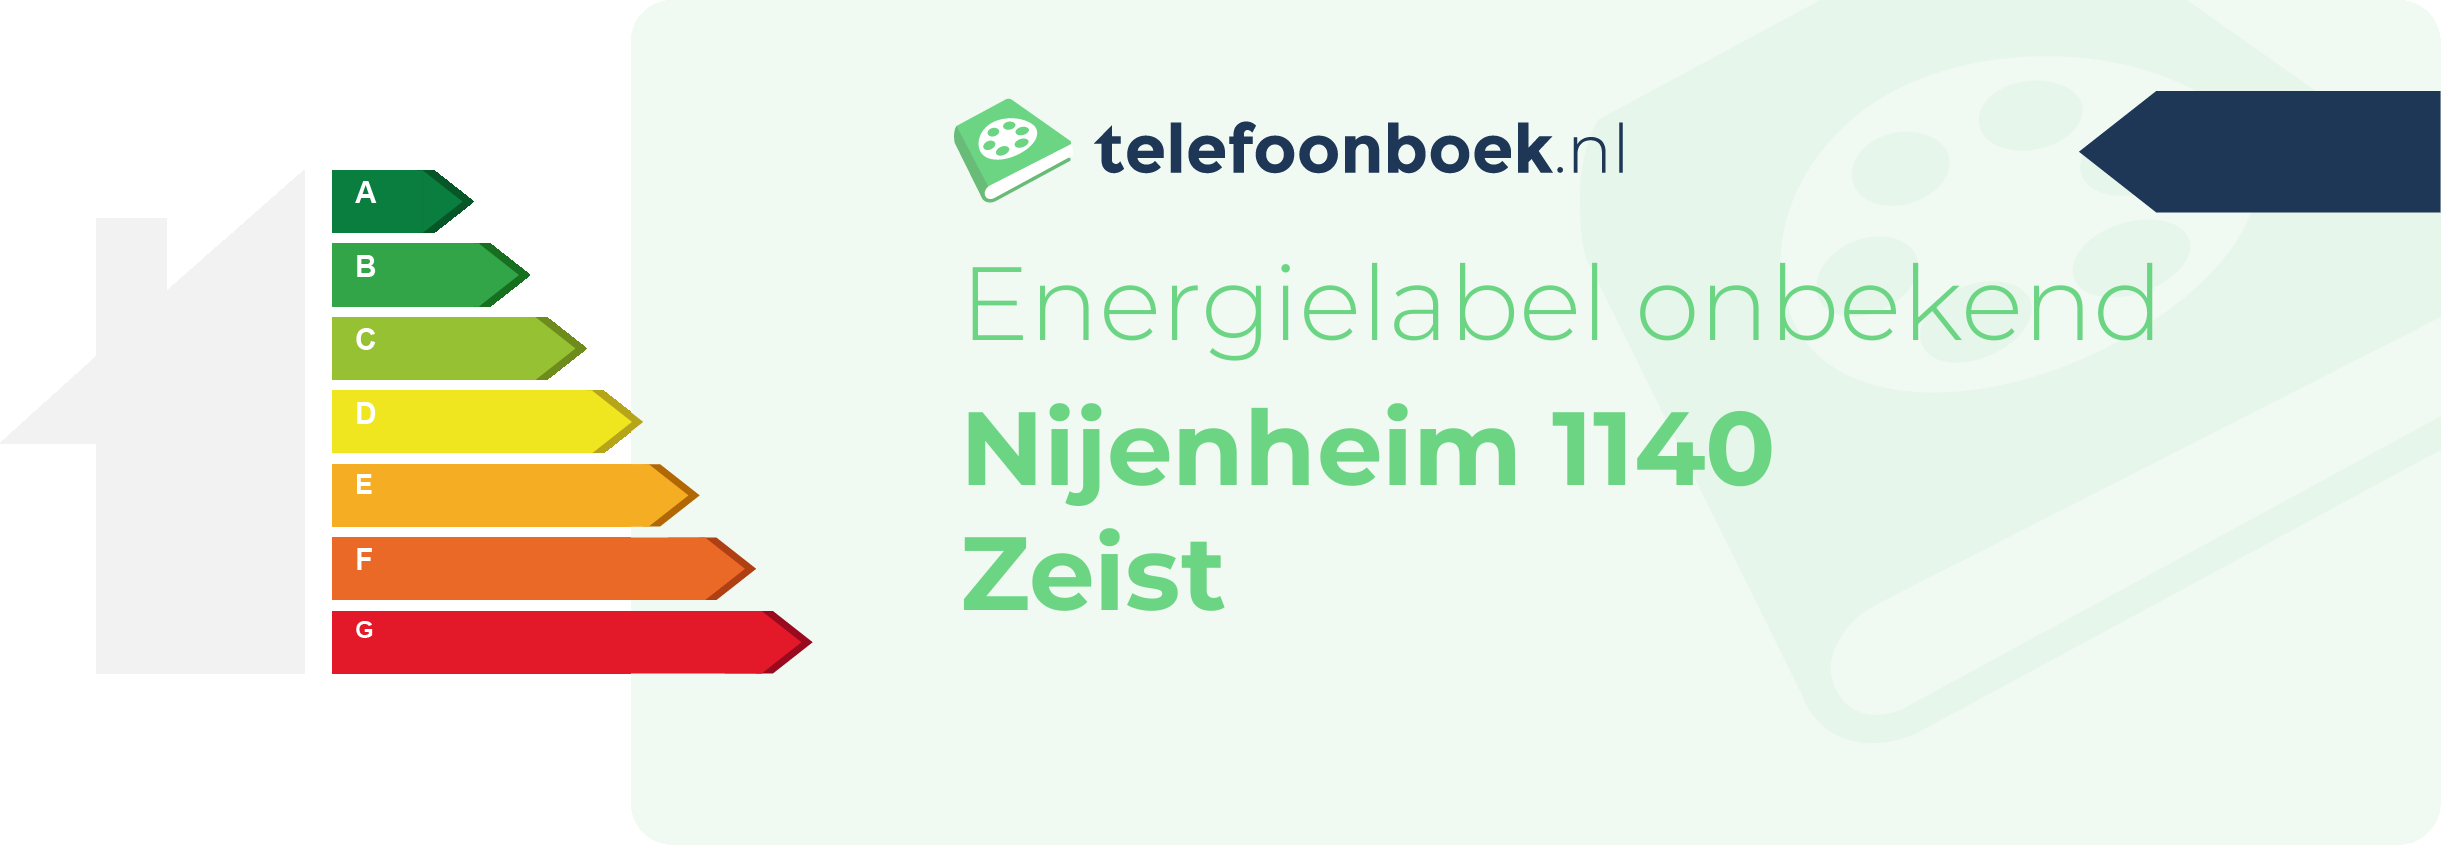 Energielabel Nijenheim 1140 Zeist